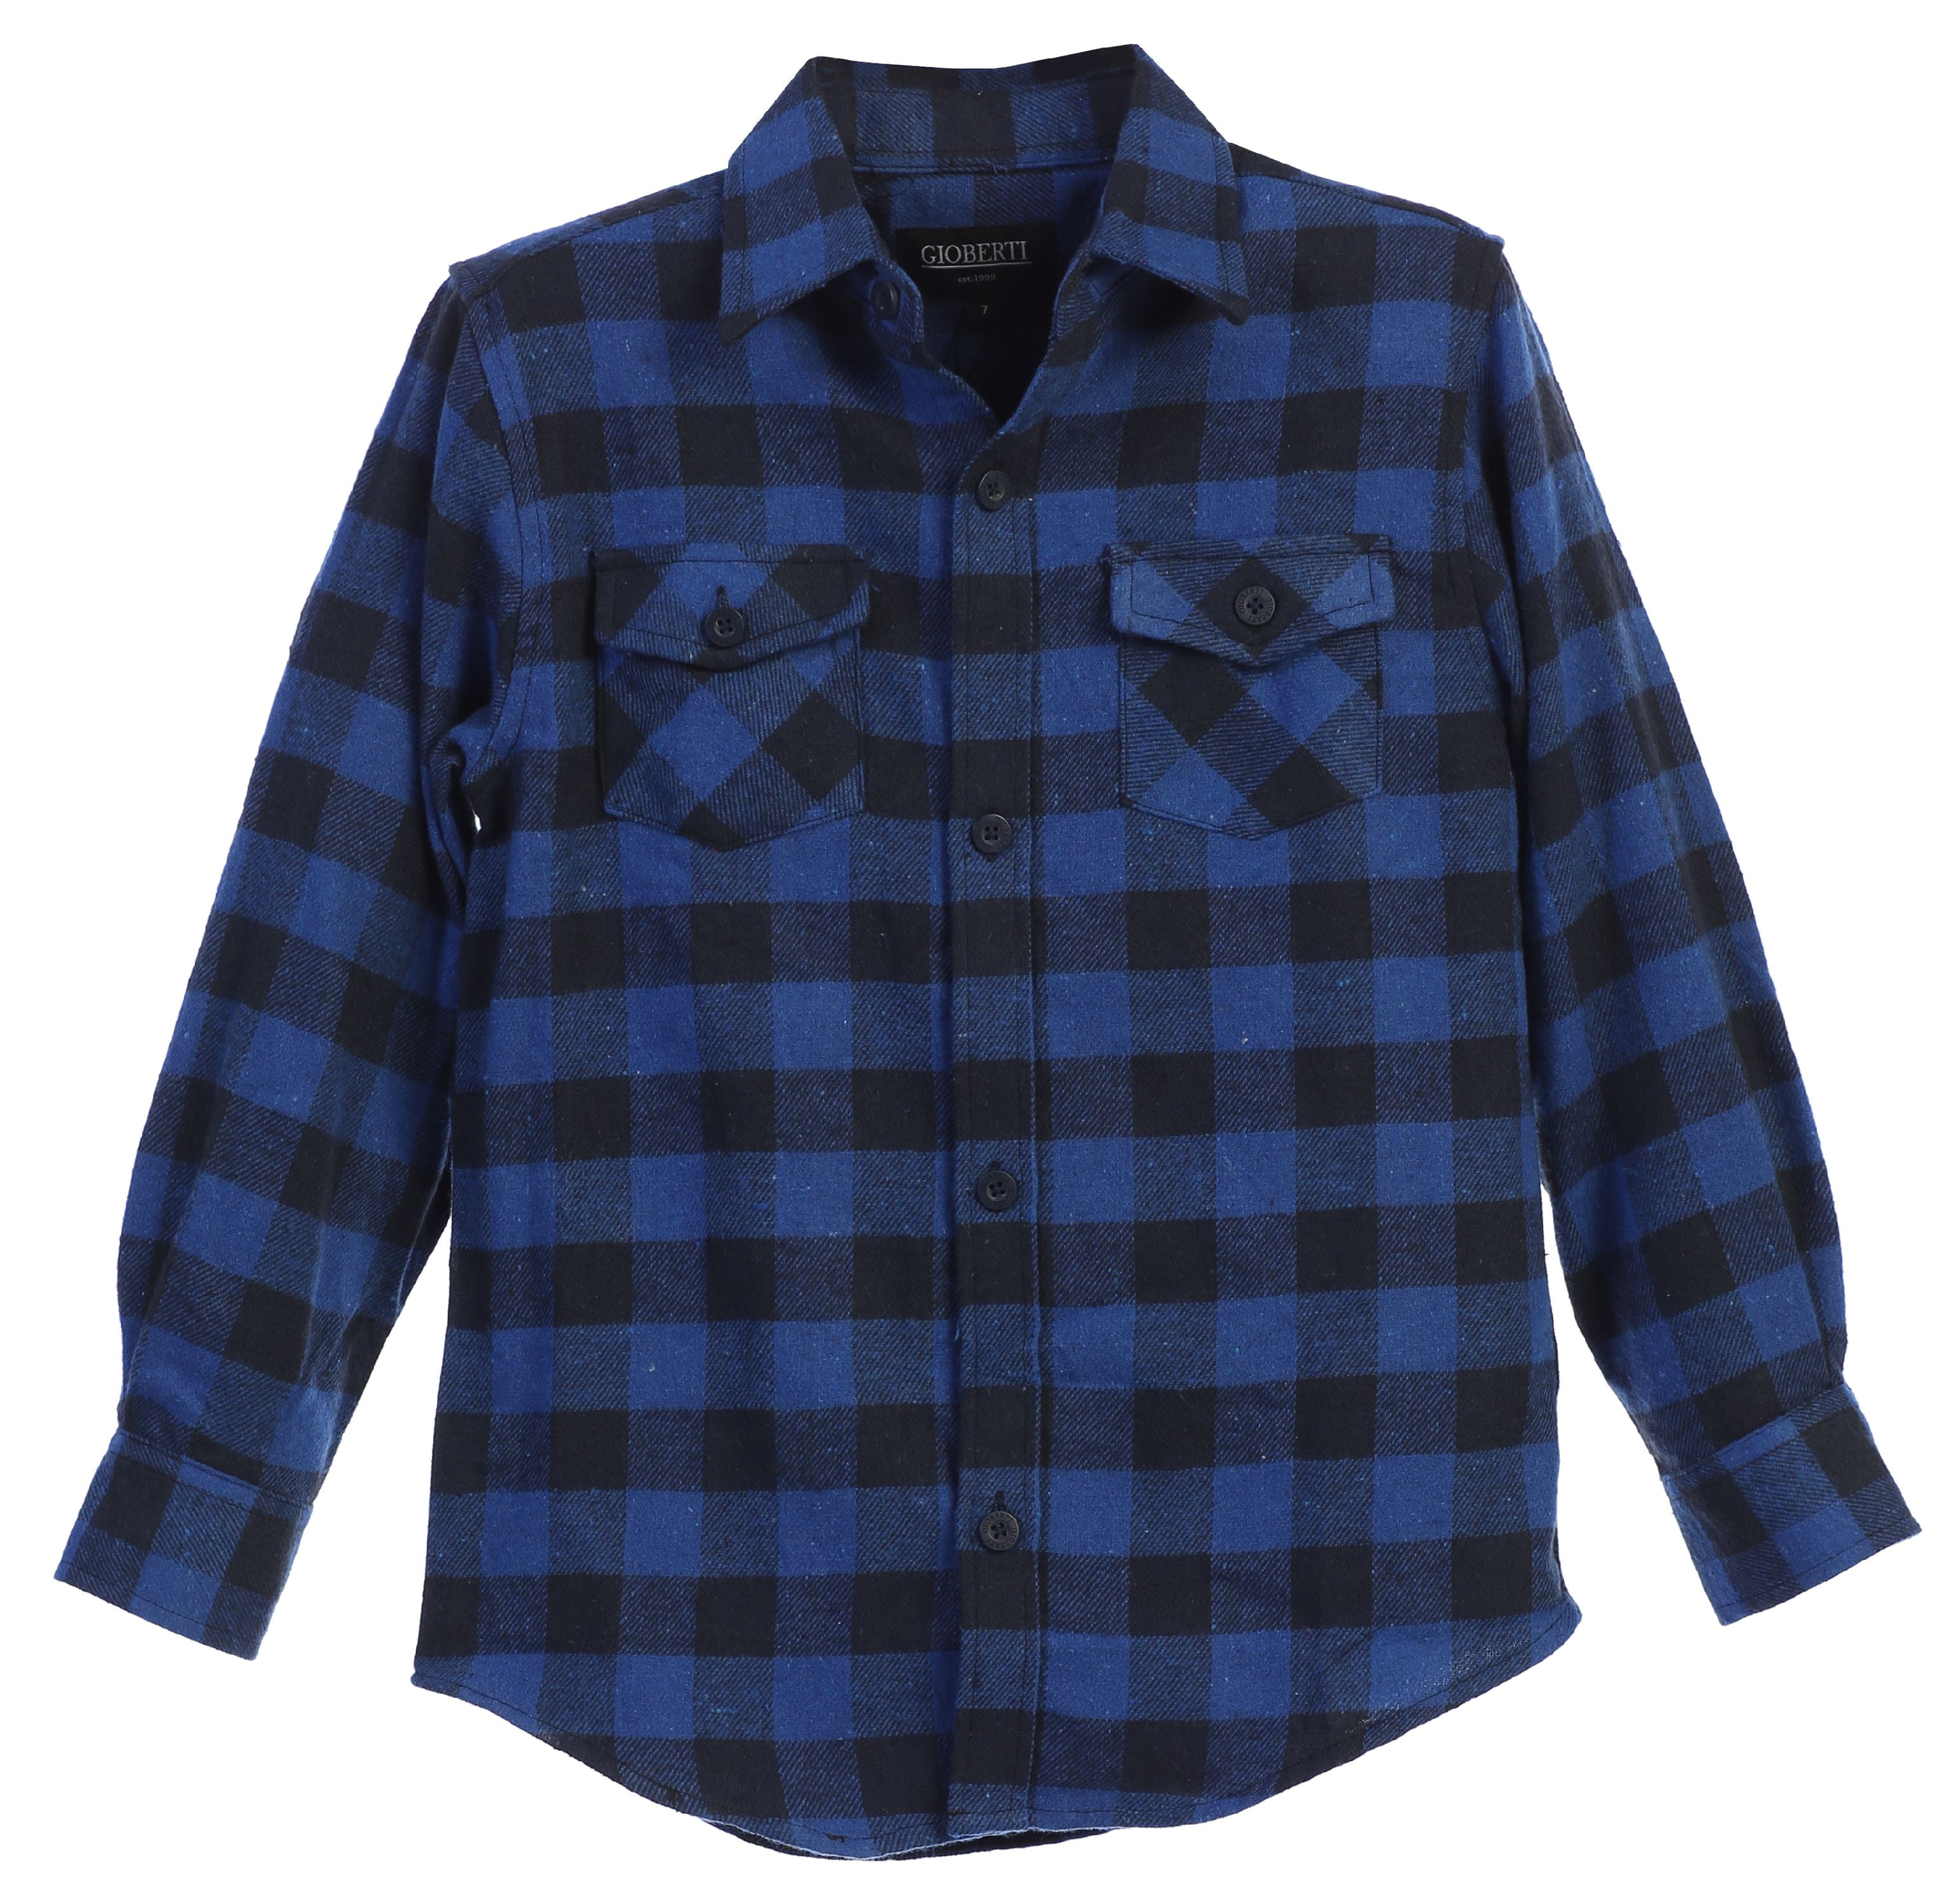 Gioberti Boys Long Sleeve Plaid Checked Flannel Shirt - Walmart.com